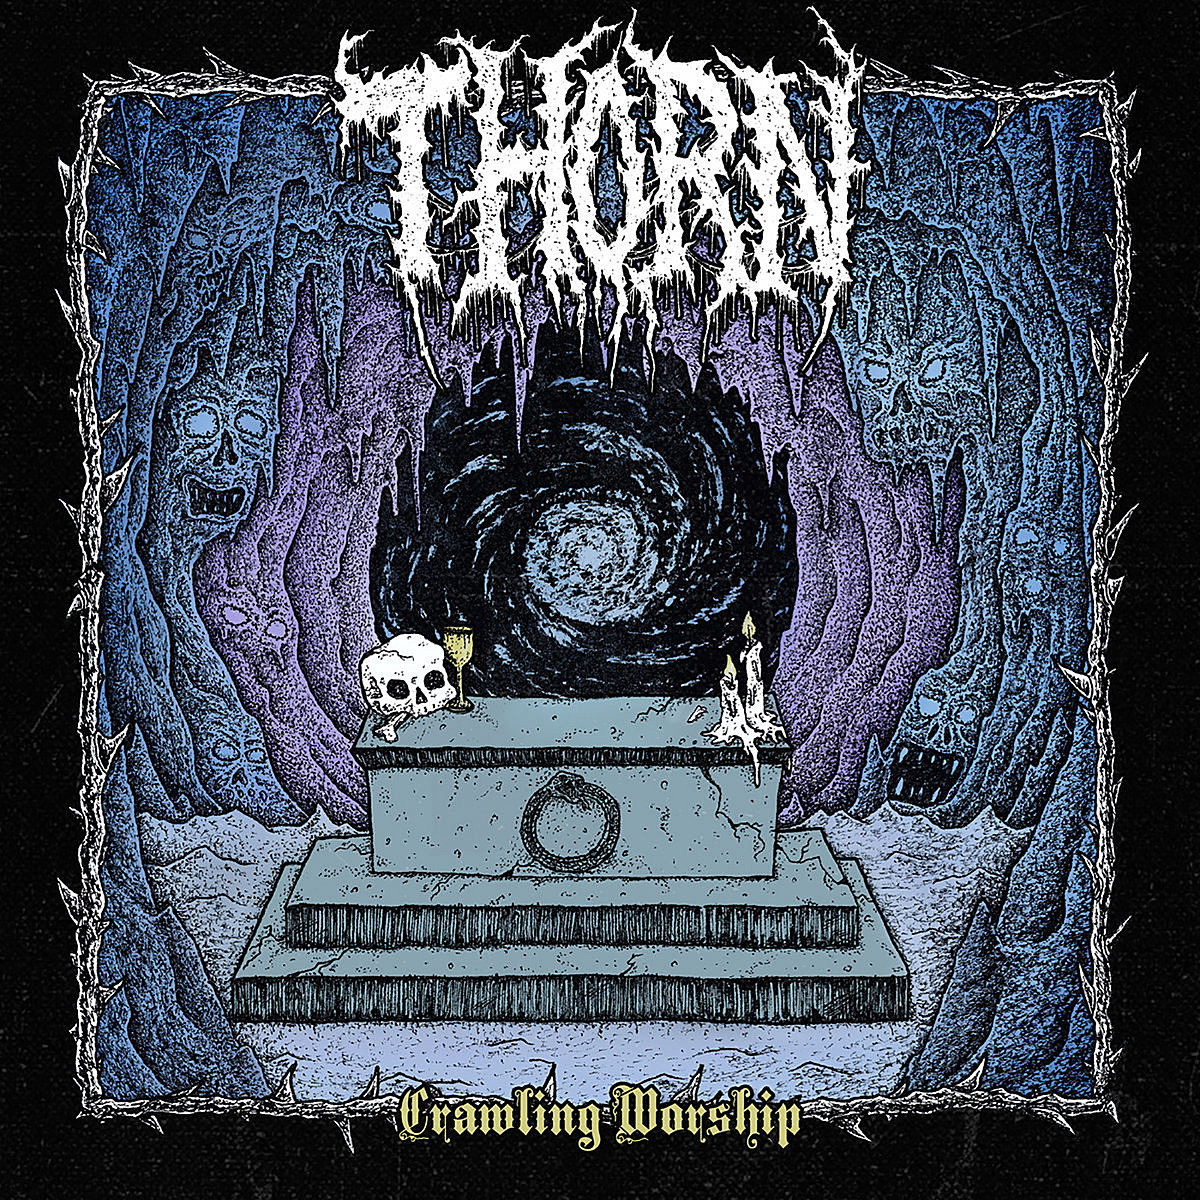 Thorn Crawling Worship